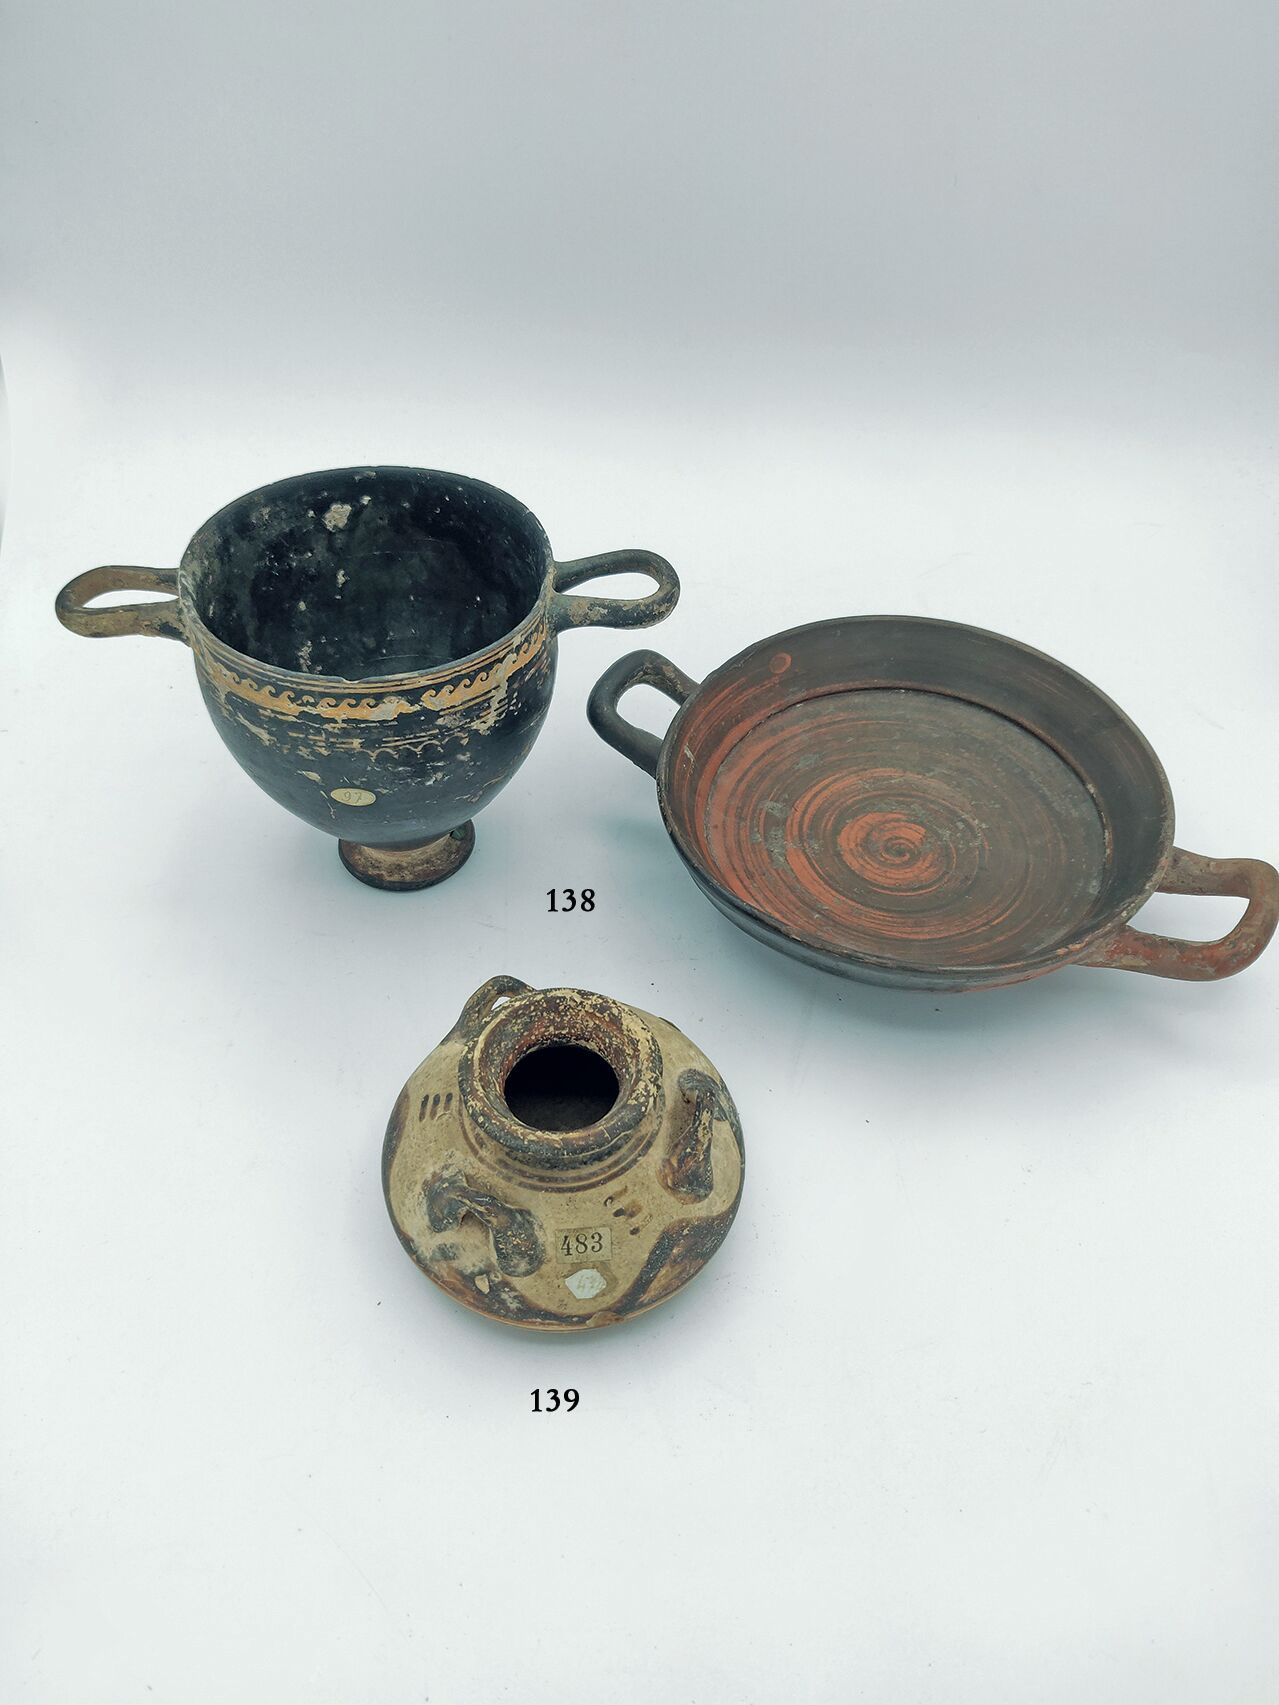 Null 有几何装饰的透镜花瓶，有三个小把手。
迈锡尼时期的艺术。
公元前14世纪。